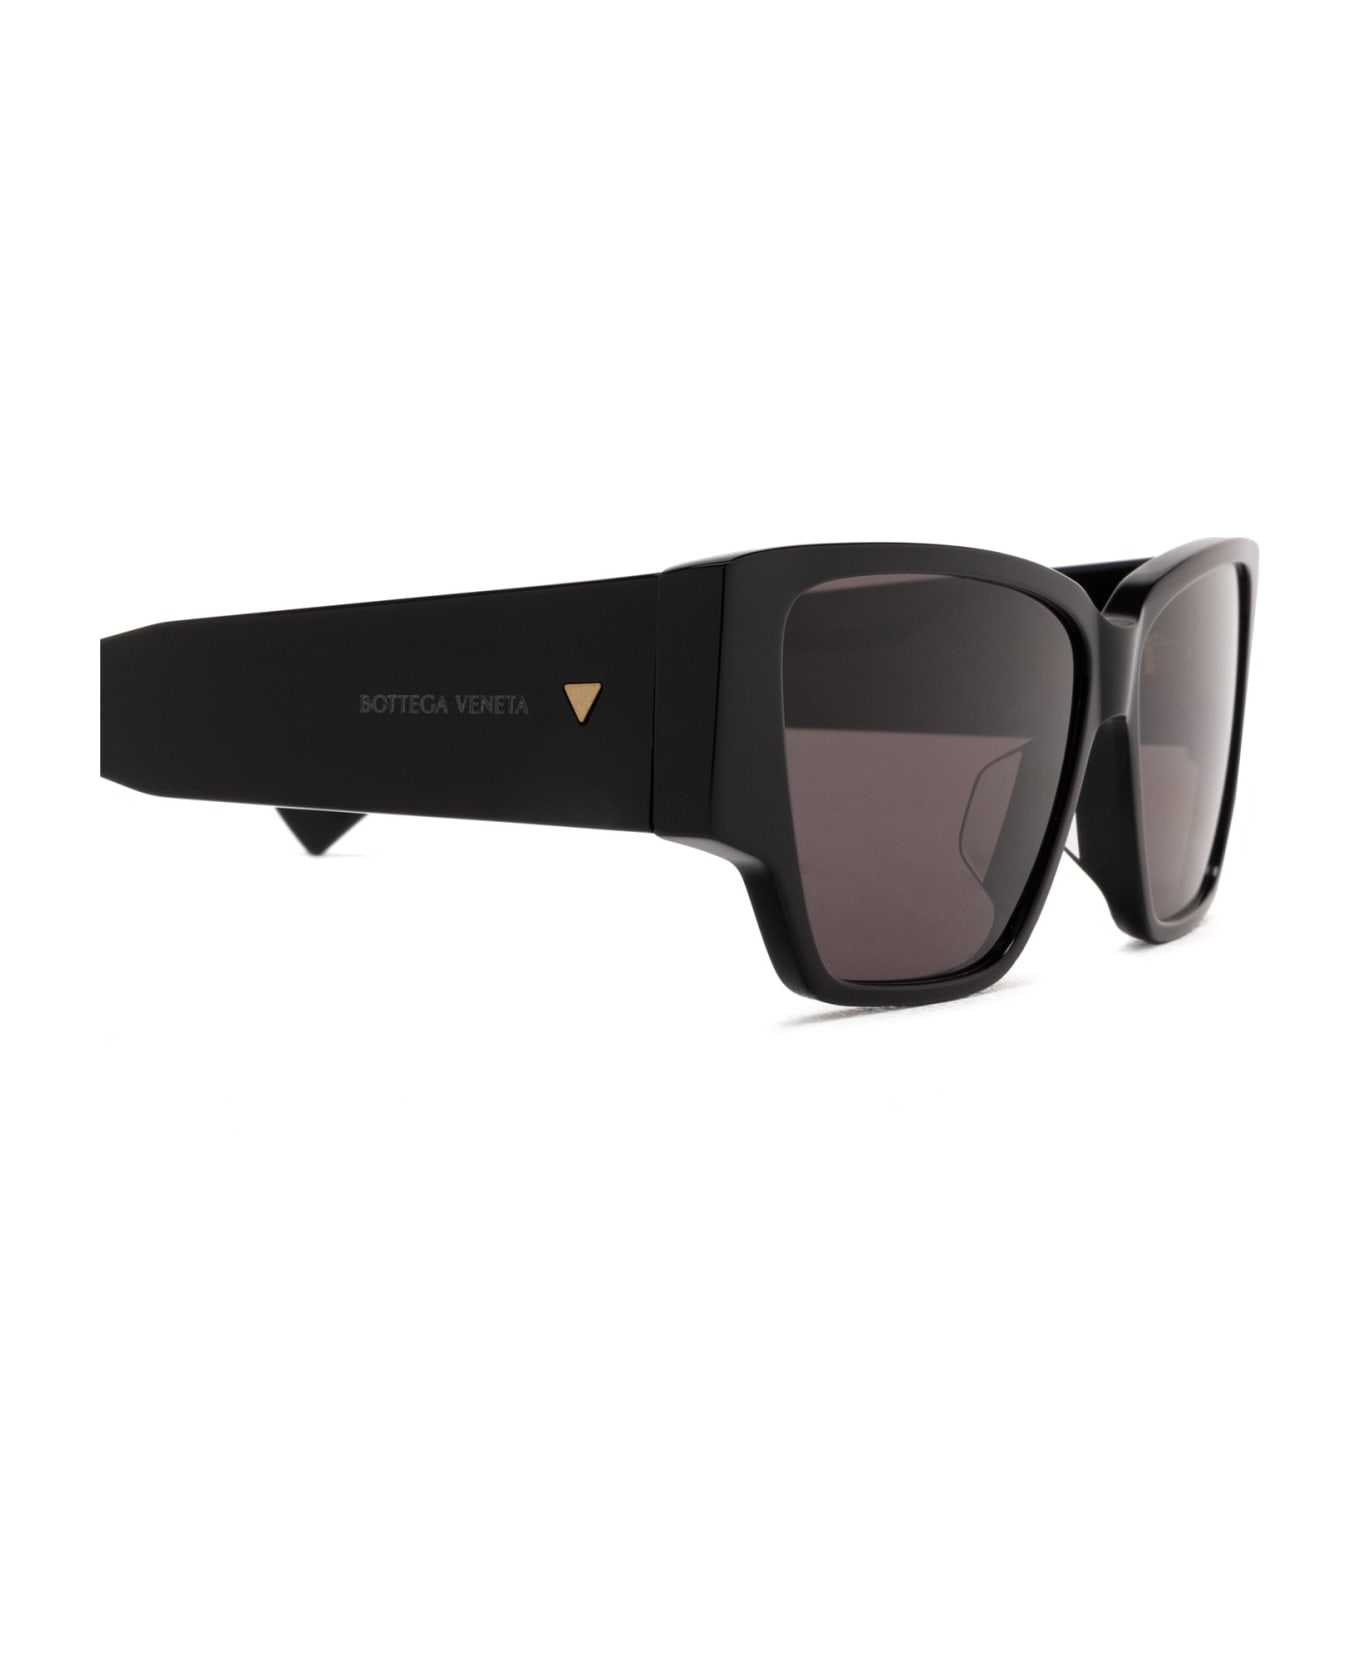 Bottega Veneta Eyewear Bv1285s Black Sunglasses - Black